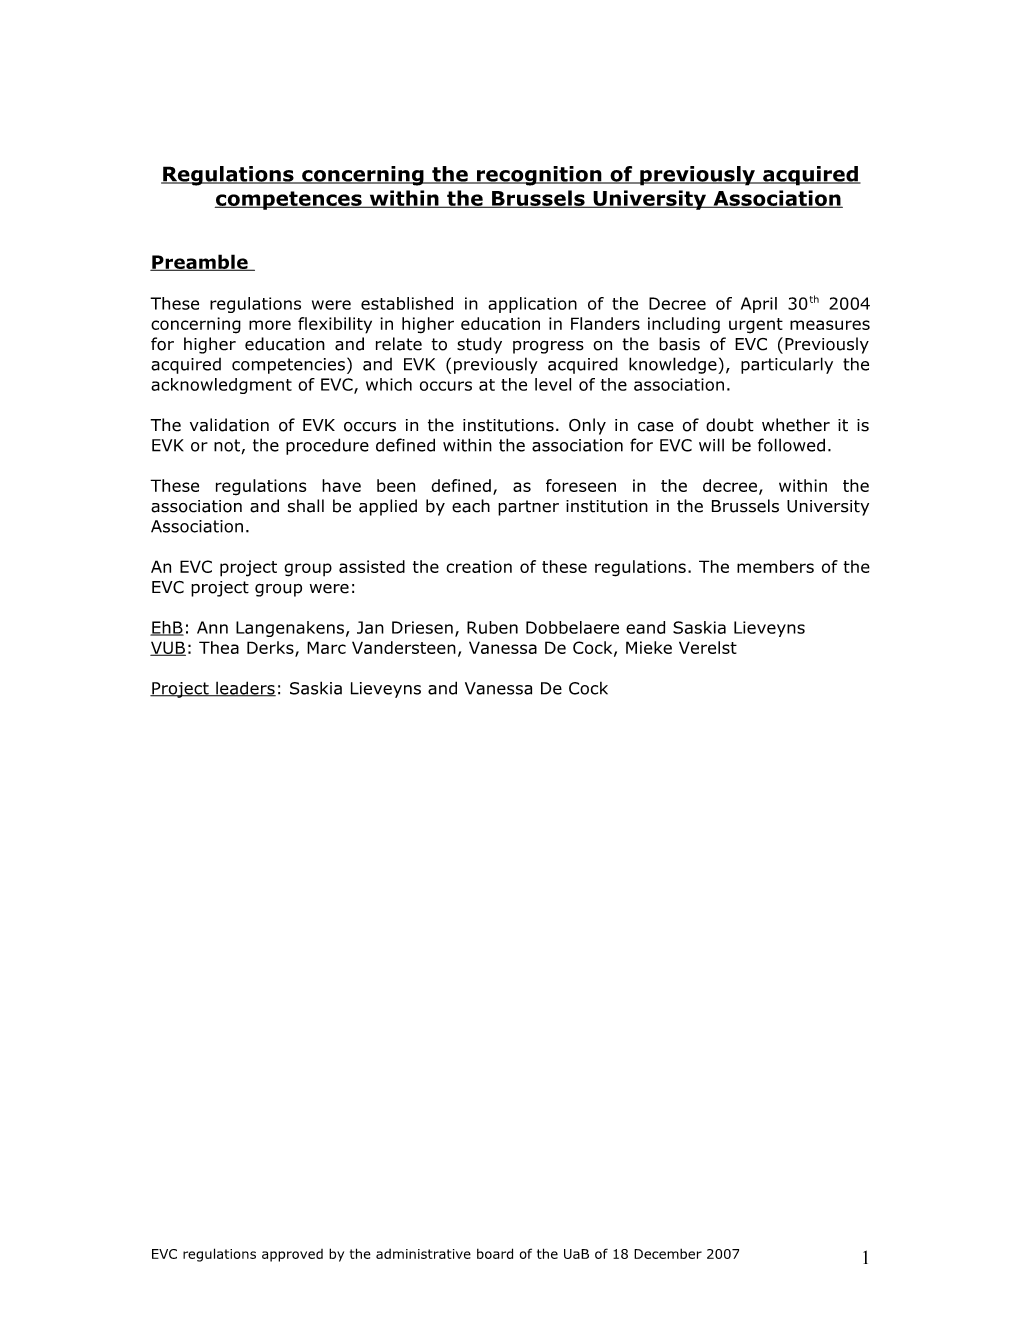 Reglement Betreffende De Erkenning Van EVC Binnen De Universitaire Associatie Brussel